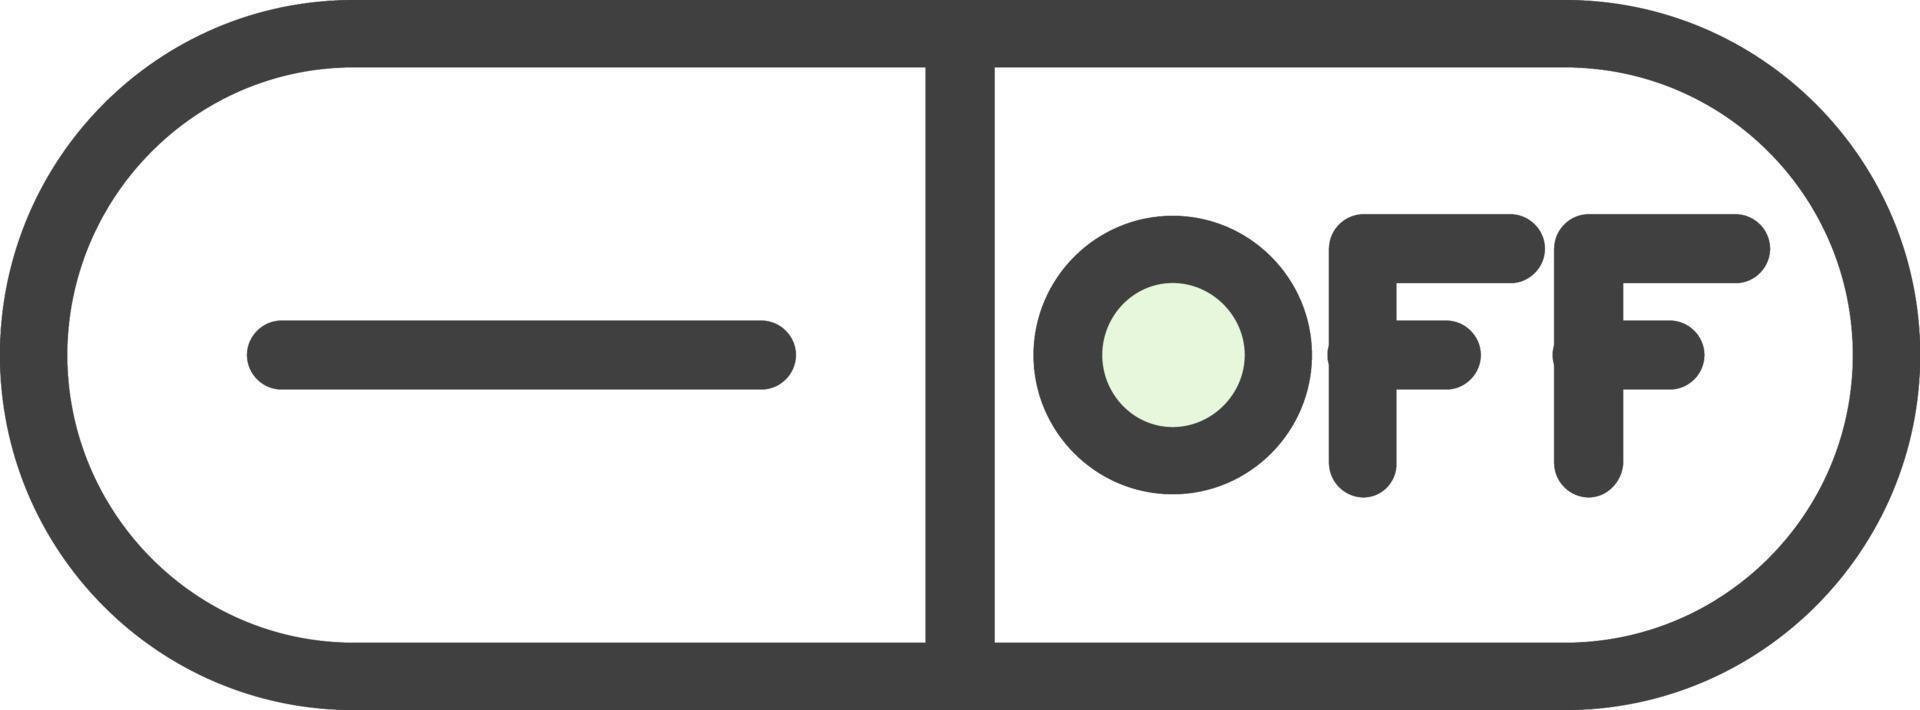 Toggle Off Vector Icon Design